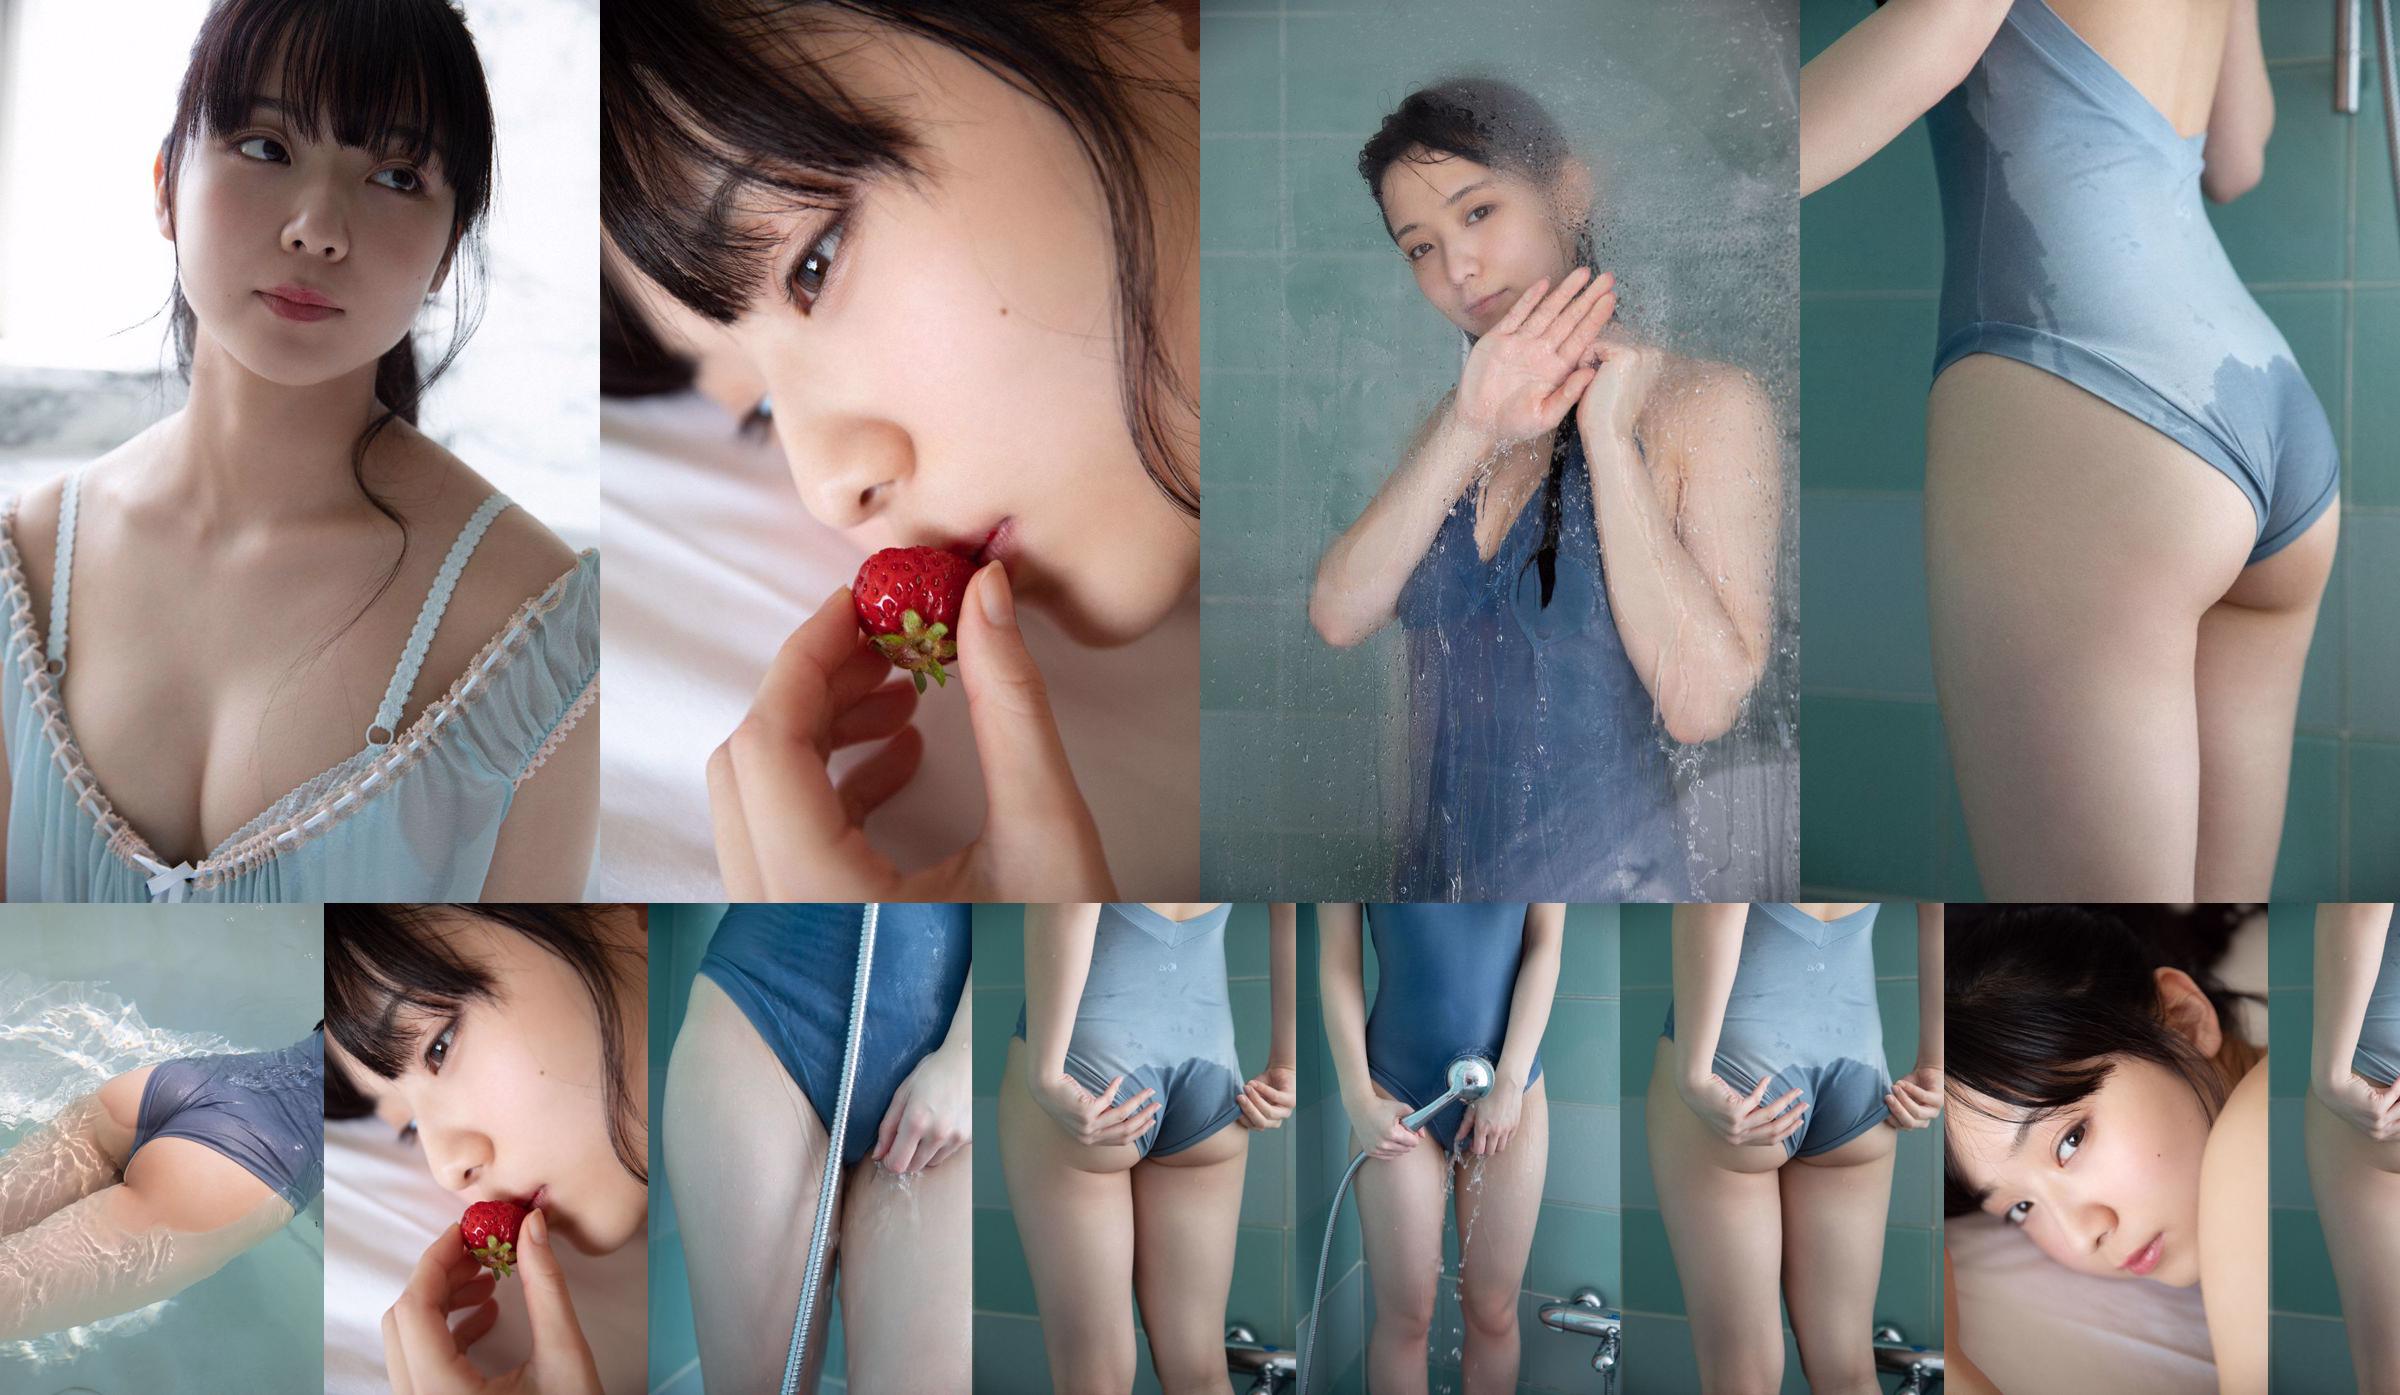 [THỨ SÁU] Mio Imada "Phép màu của nữ diễn viên + bikini trong phim truyền hình" Hana nochi Hare "" Ảnh No.66b0f4 Trang 1